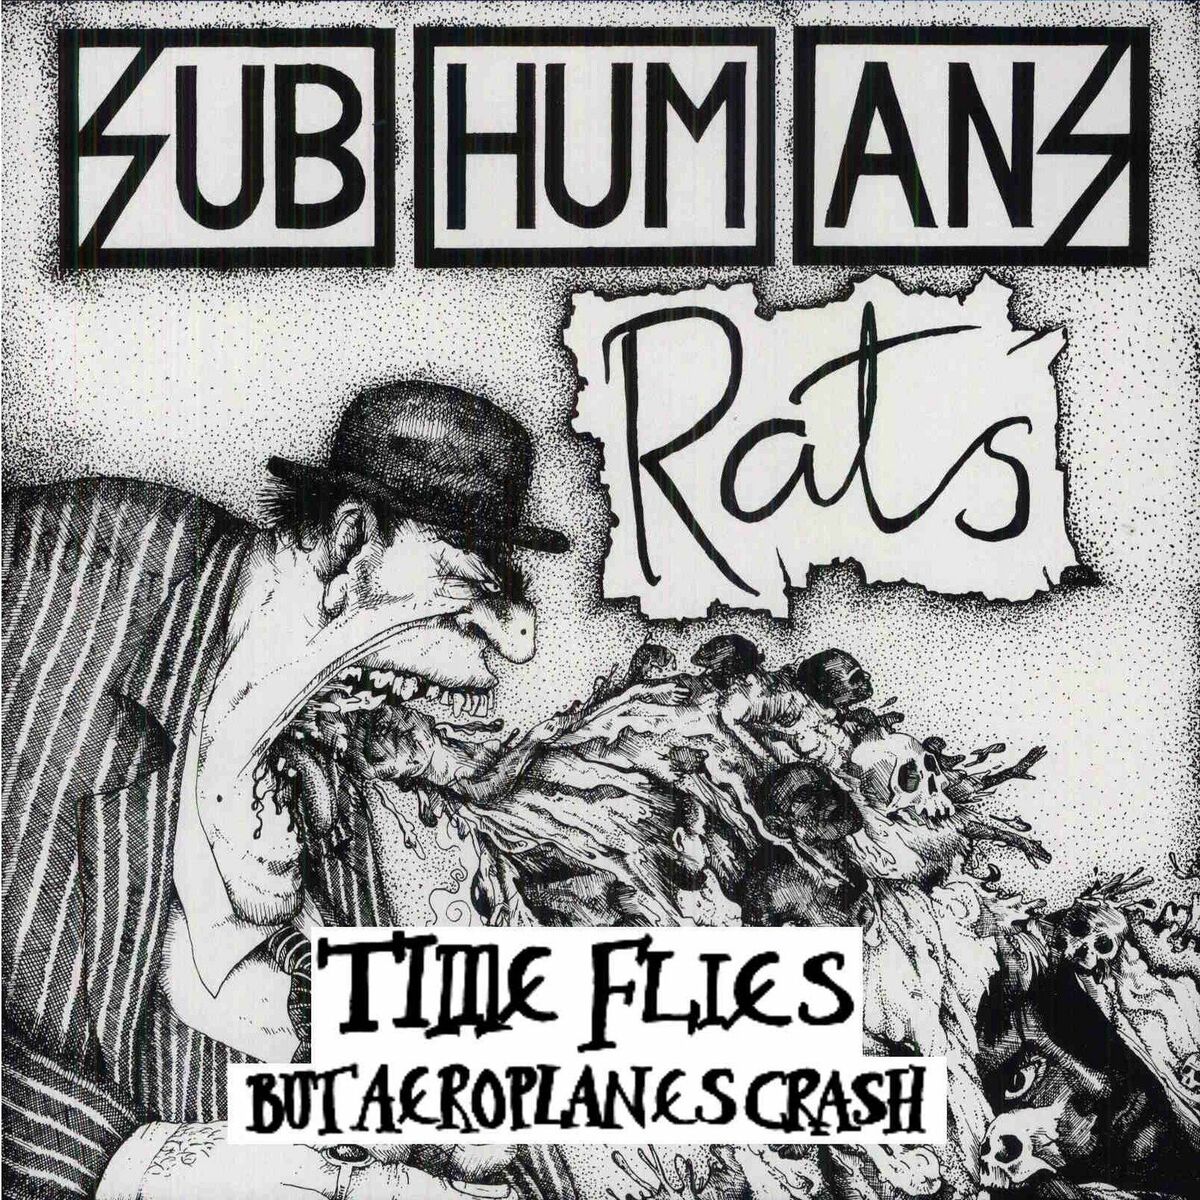 Subhumans: albums